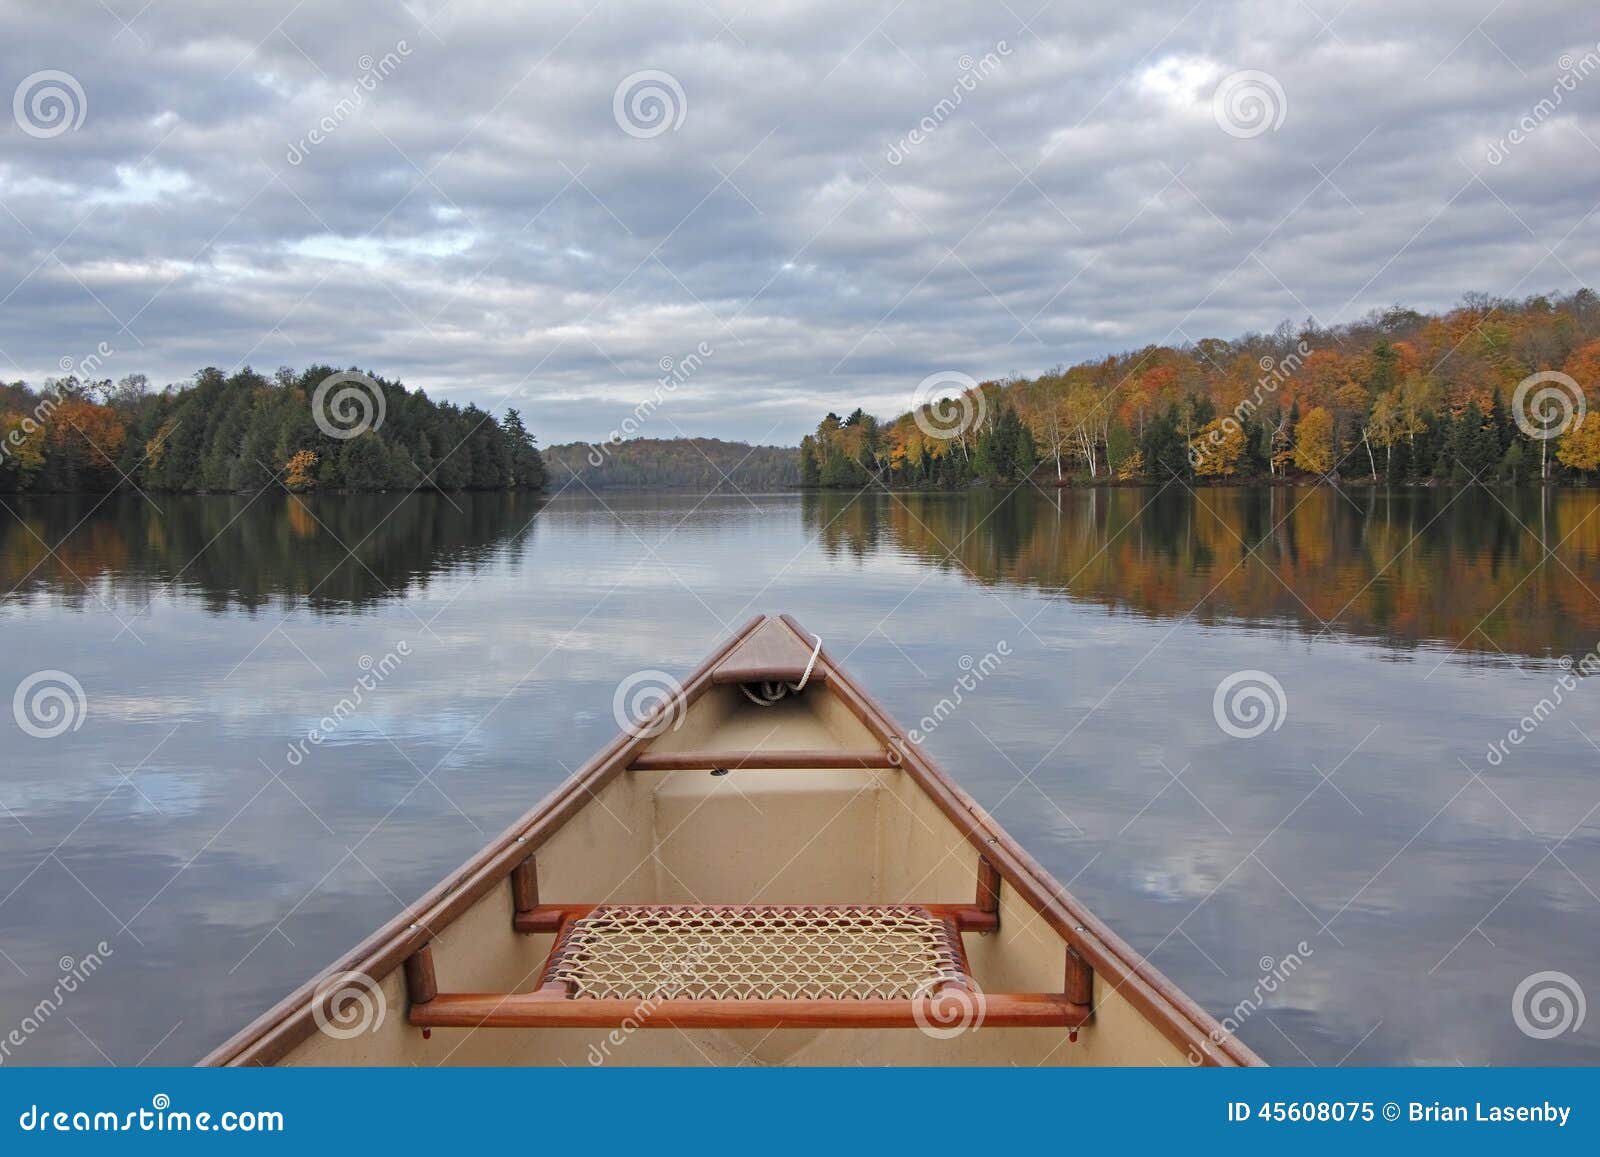 canoe bow on an autumn lake